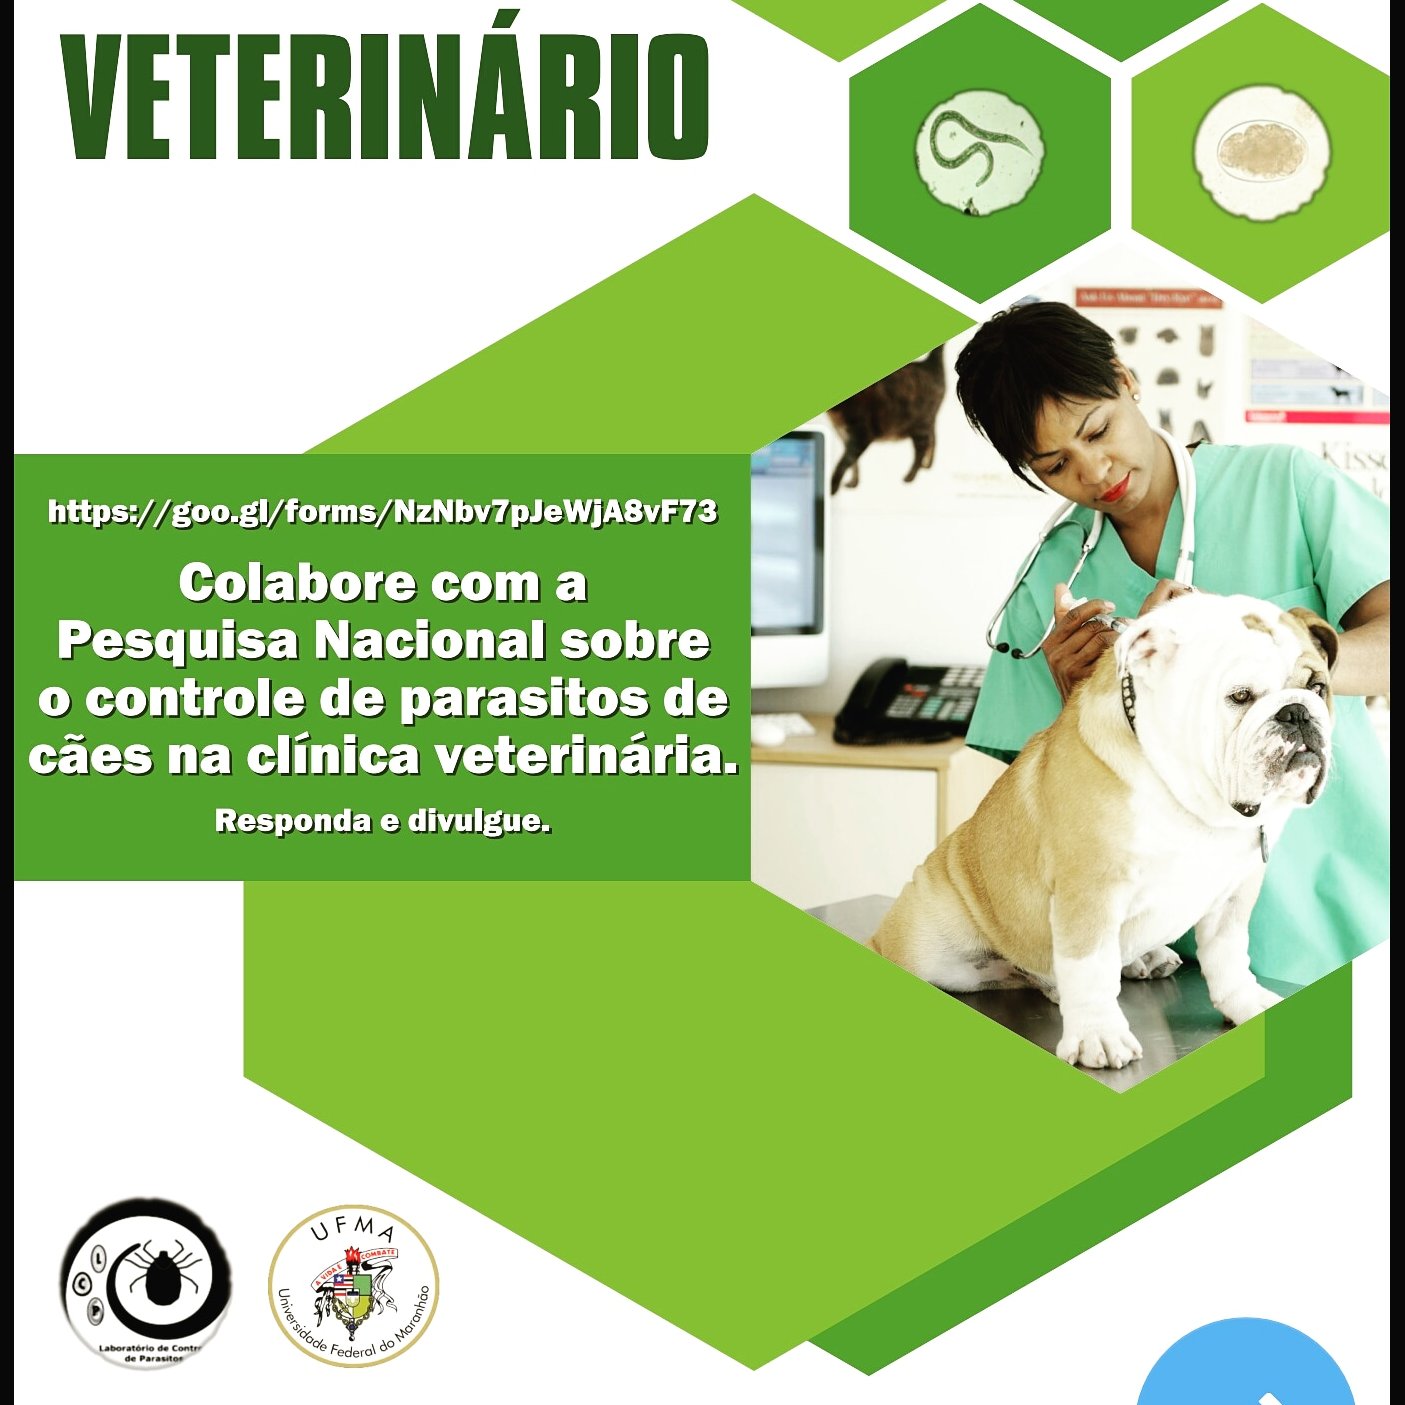 Pesquisa Nacional sobre o controle de parasitos de cães na clínica veterinária. Colabore respondendo o questionário. Obrigada 🐶